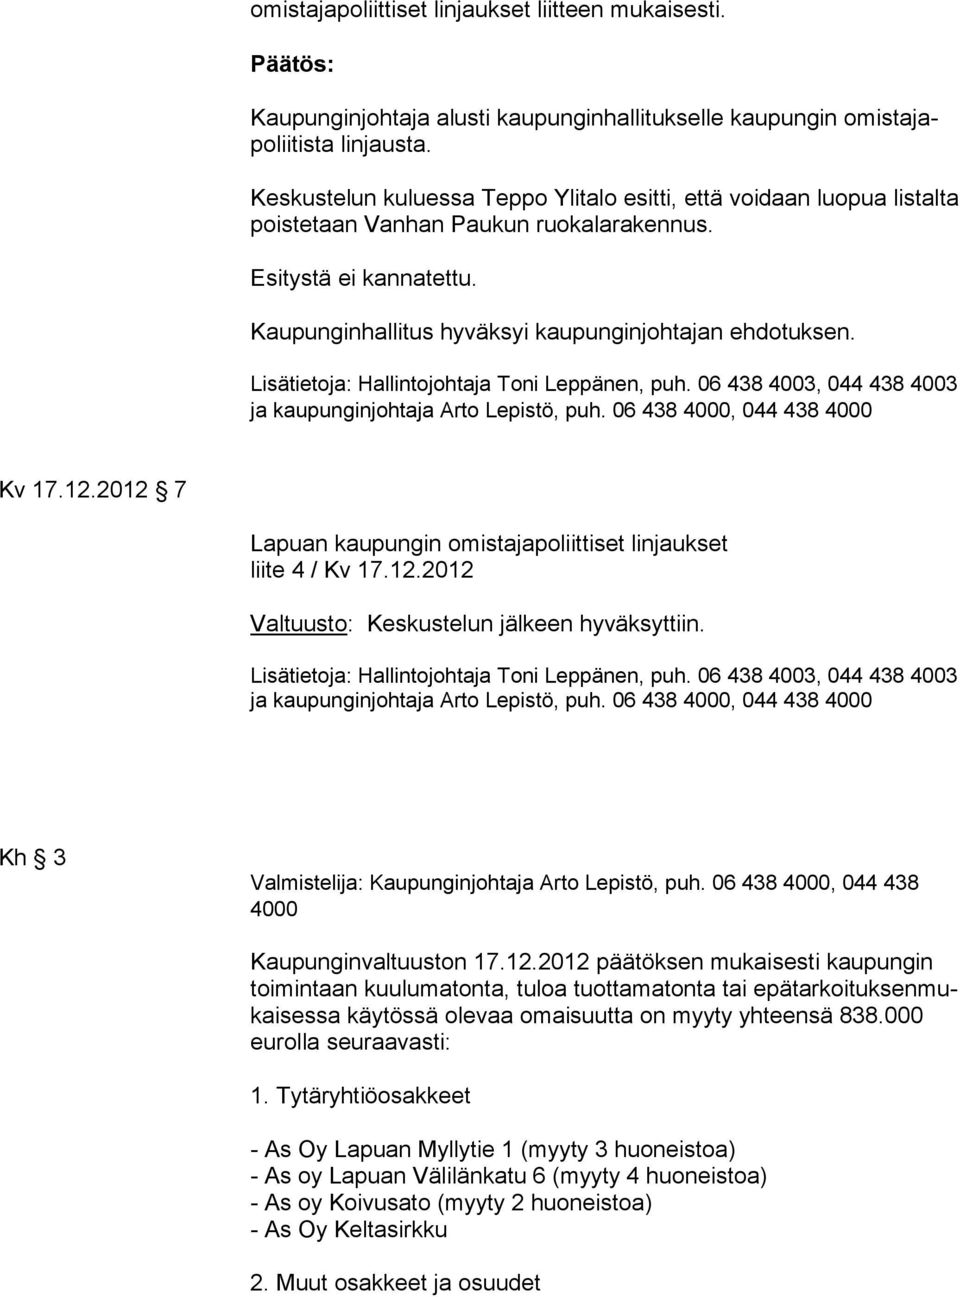 ja kaupunginjohtaja Arto Lepistö, puh. 06 438 4000, 044 438 4000 Kv 17.12.2012 7 Lapuan kaupungin omistajapoliittiset linjaukset liite 4 / Kv 17.12.2012 Valtuusto: Keskustelun jälkeen hyväksyttiin.